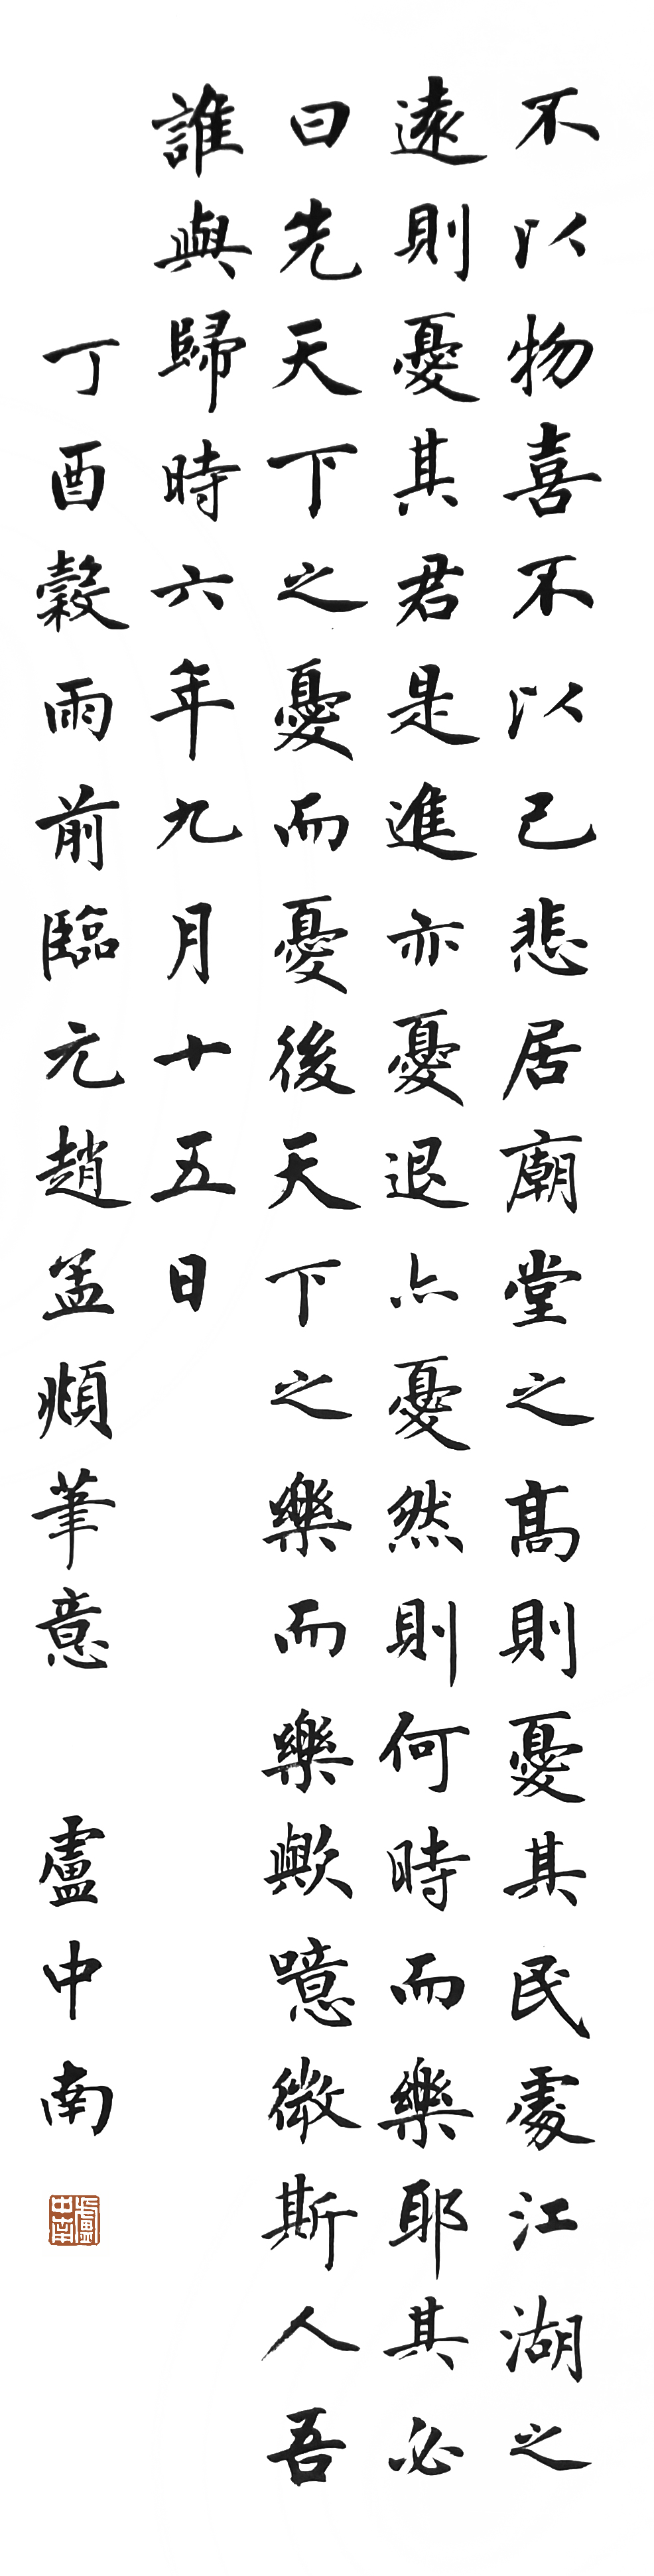 著名书法家卢中南书法作品大观插图24题字网